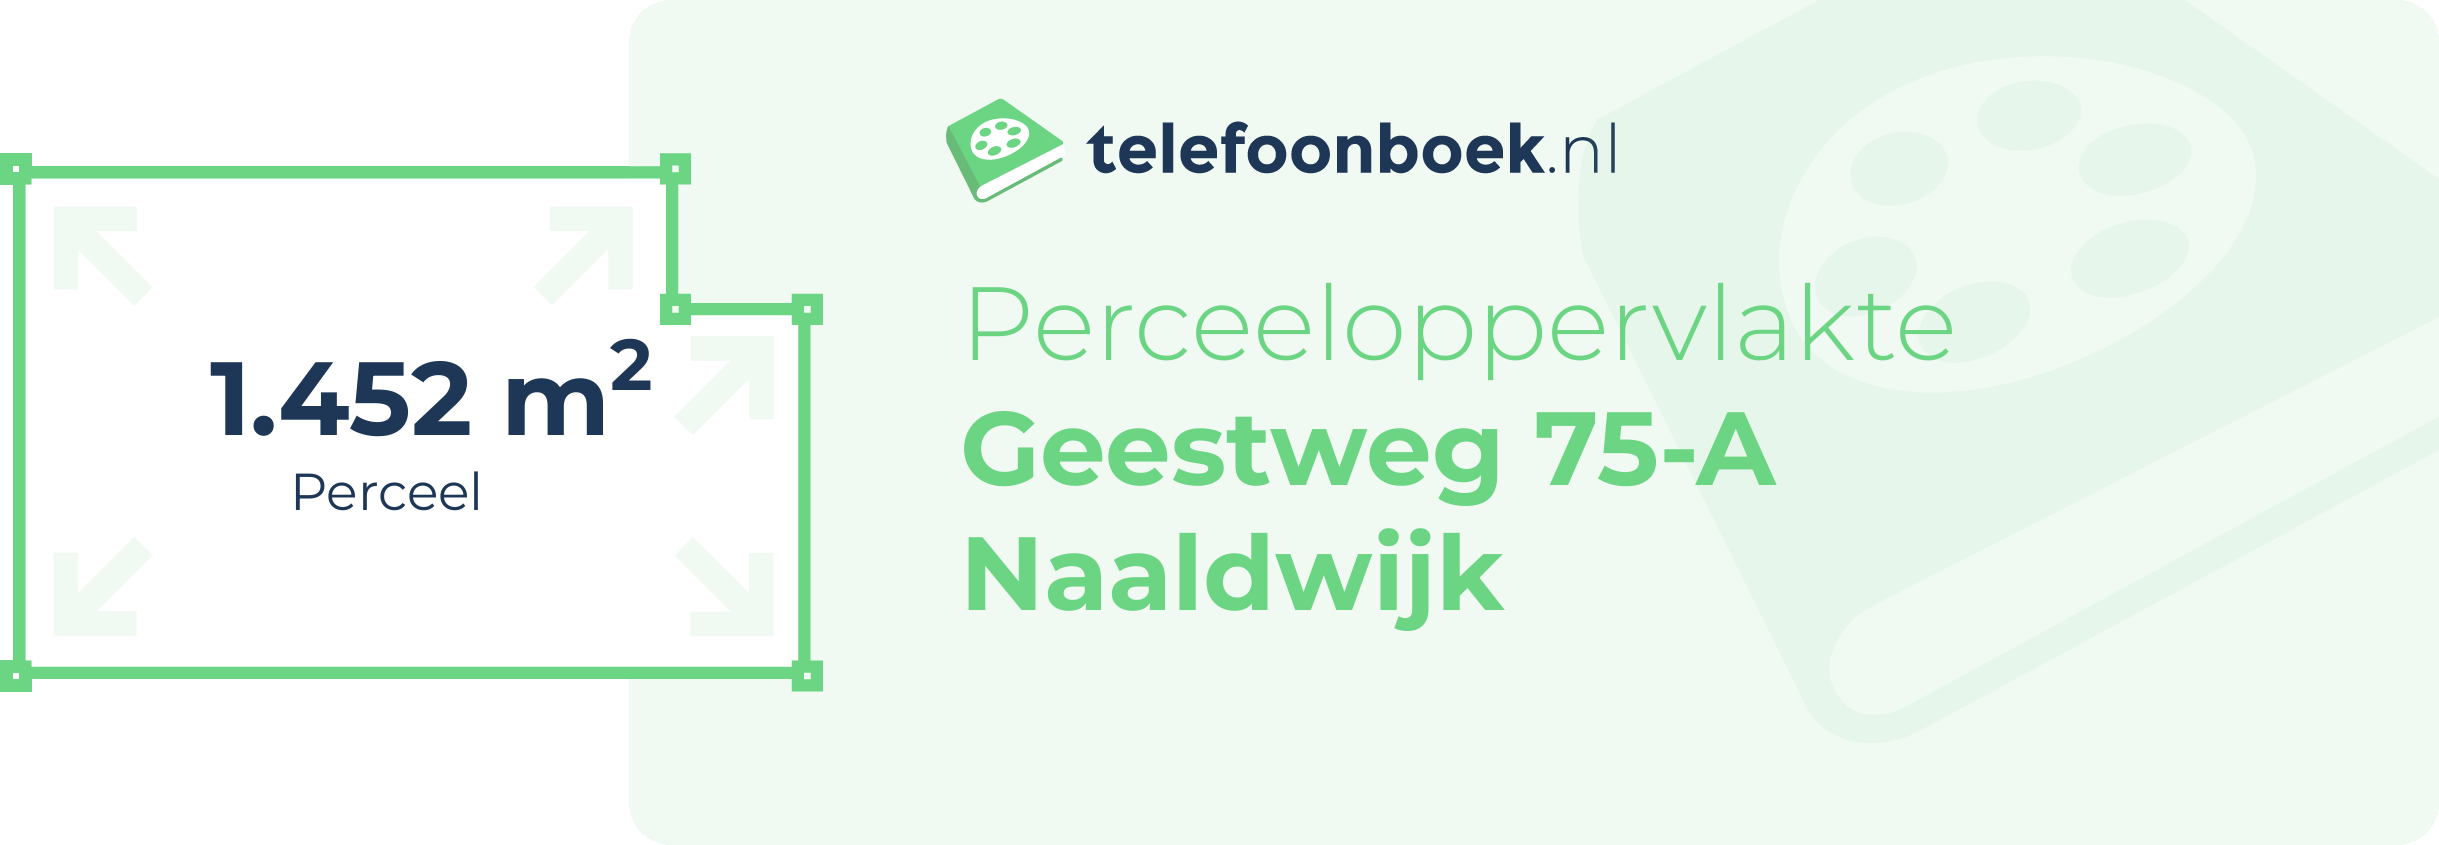 Perceeloppervlakte Geestweg 75-A Naaldwijk